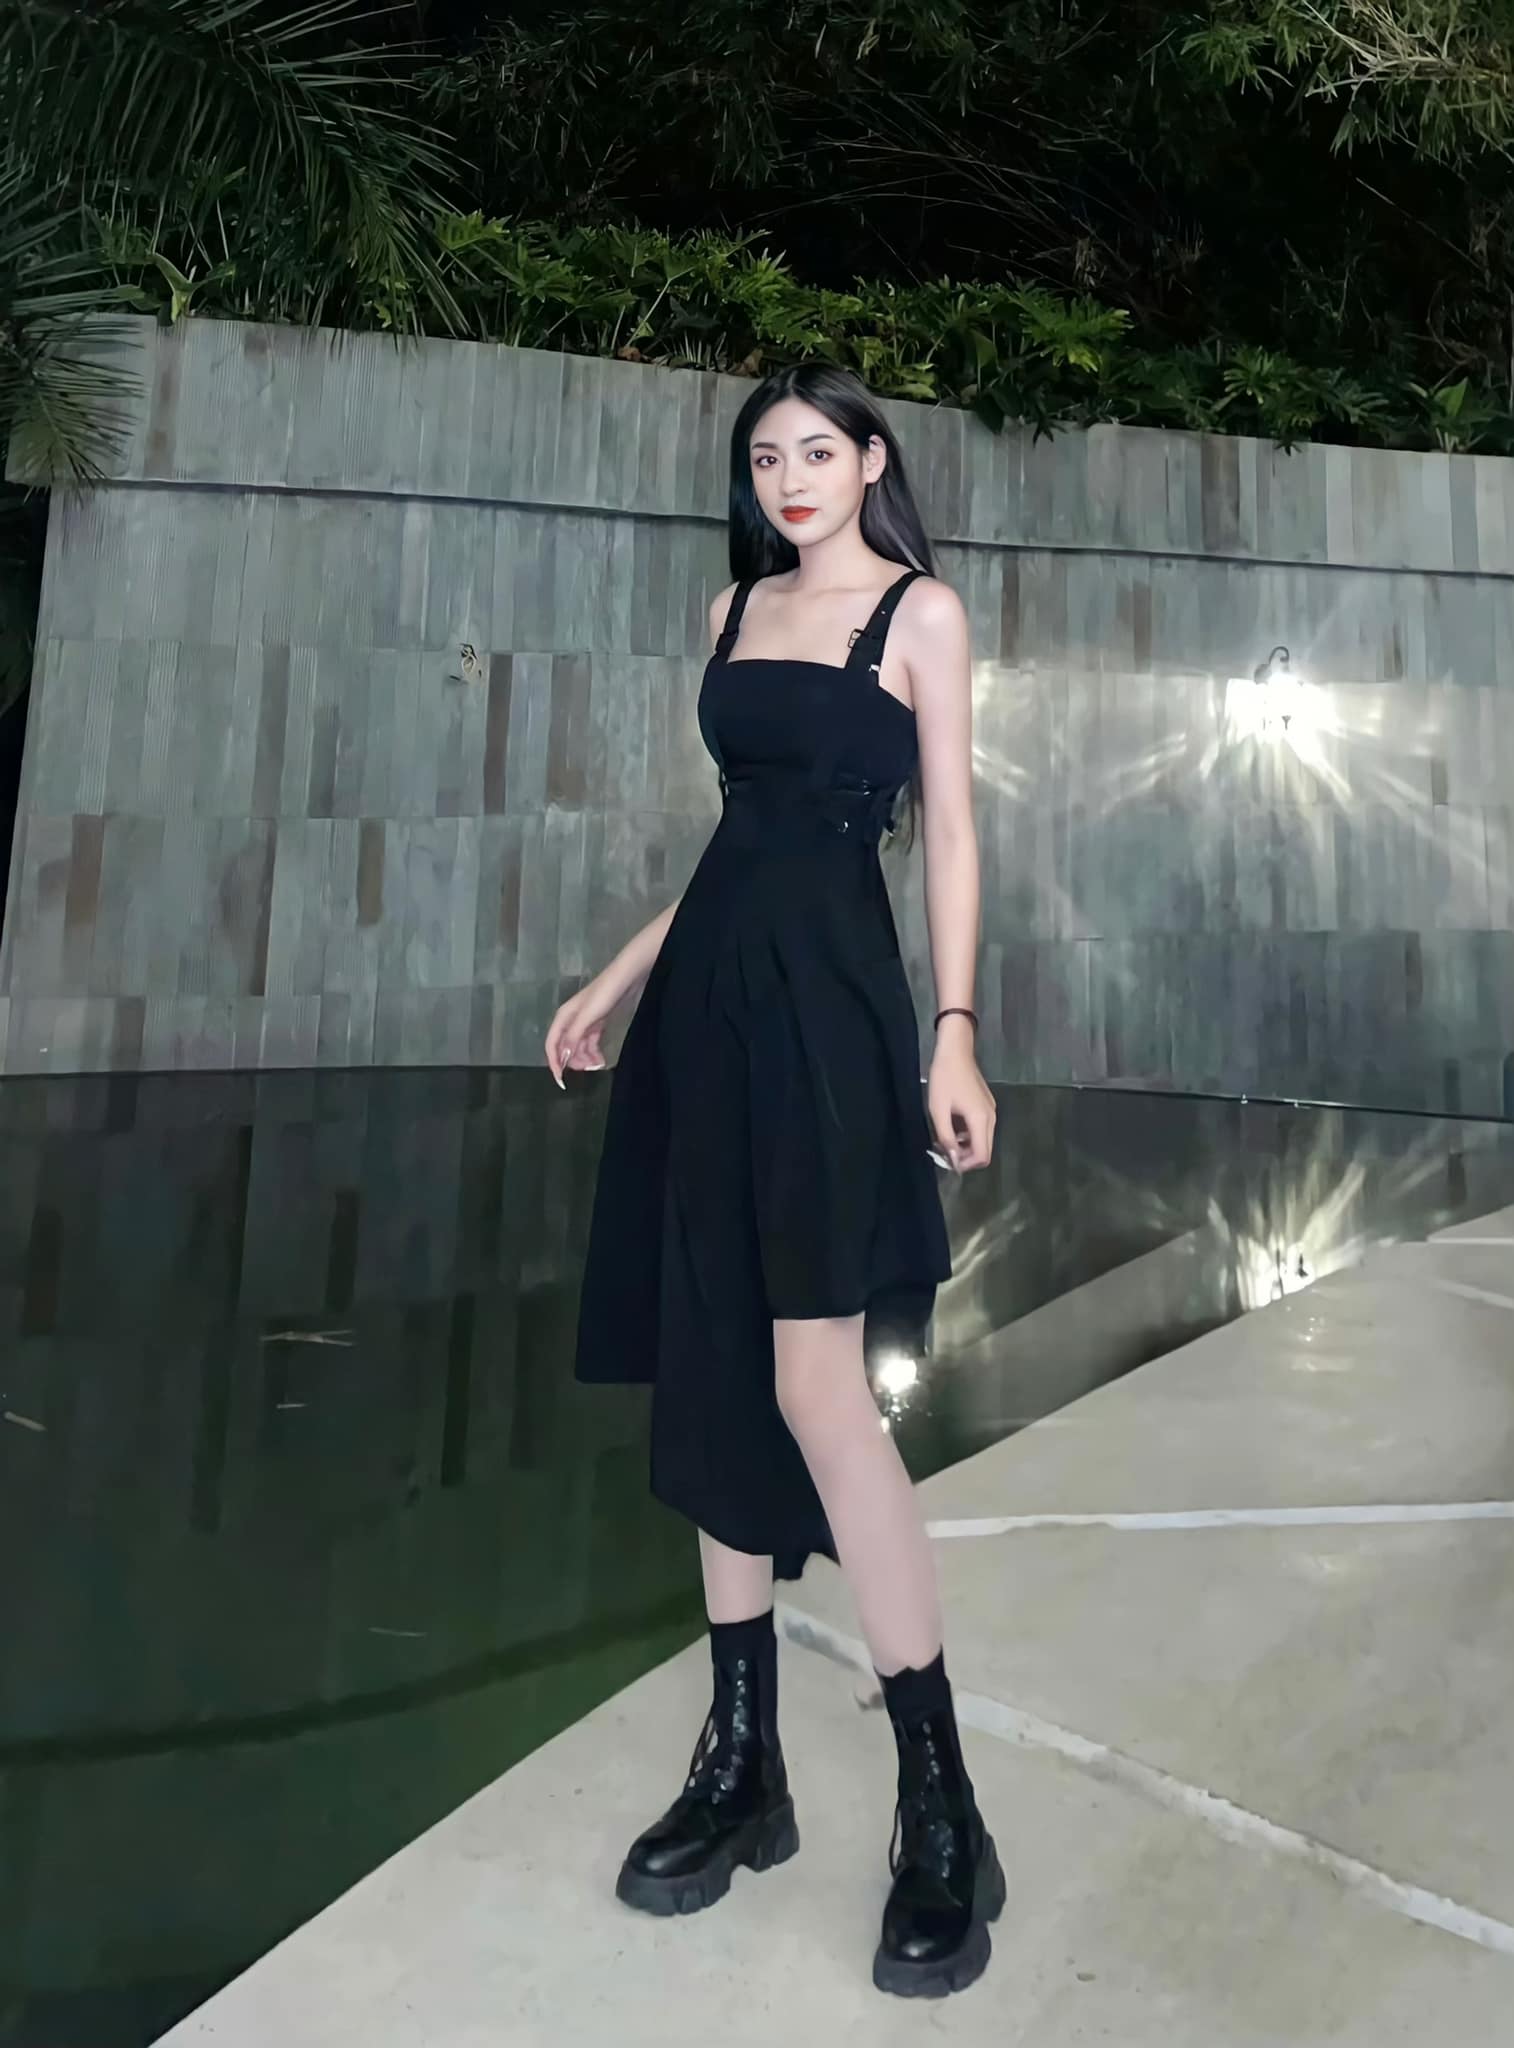 Chiếc váy đen 2 dây với thiết kế bất đối xứng đầy cá tính mix cùng đôi boots lửng hầm hố giúp hot tiktoker vừa lạ mắt, vừa ngọt ngào.